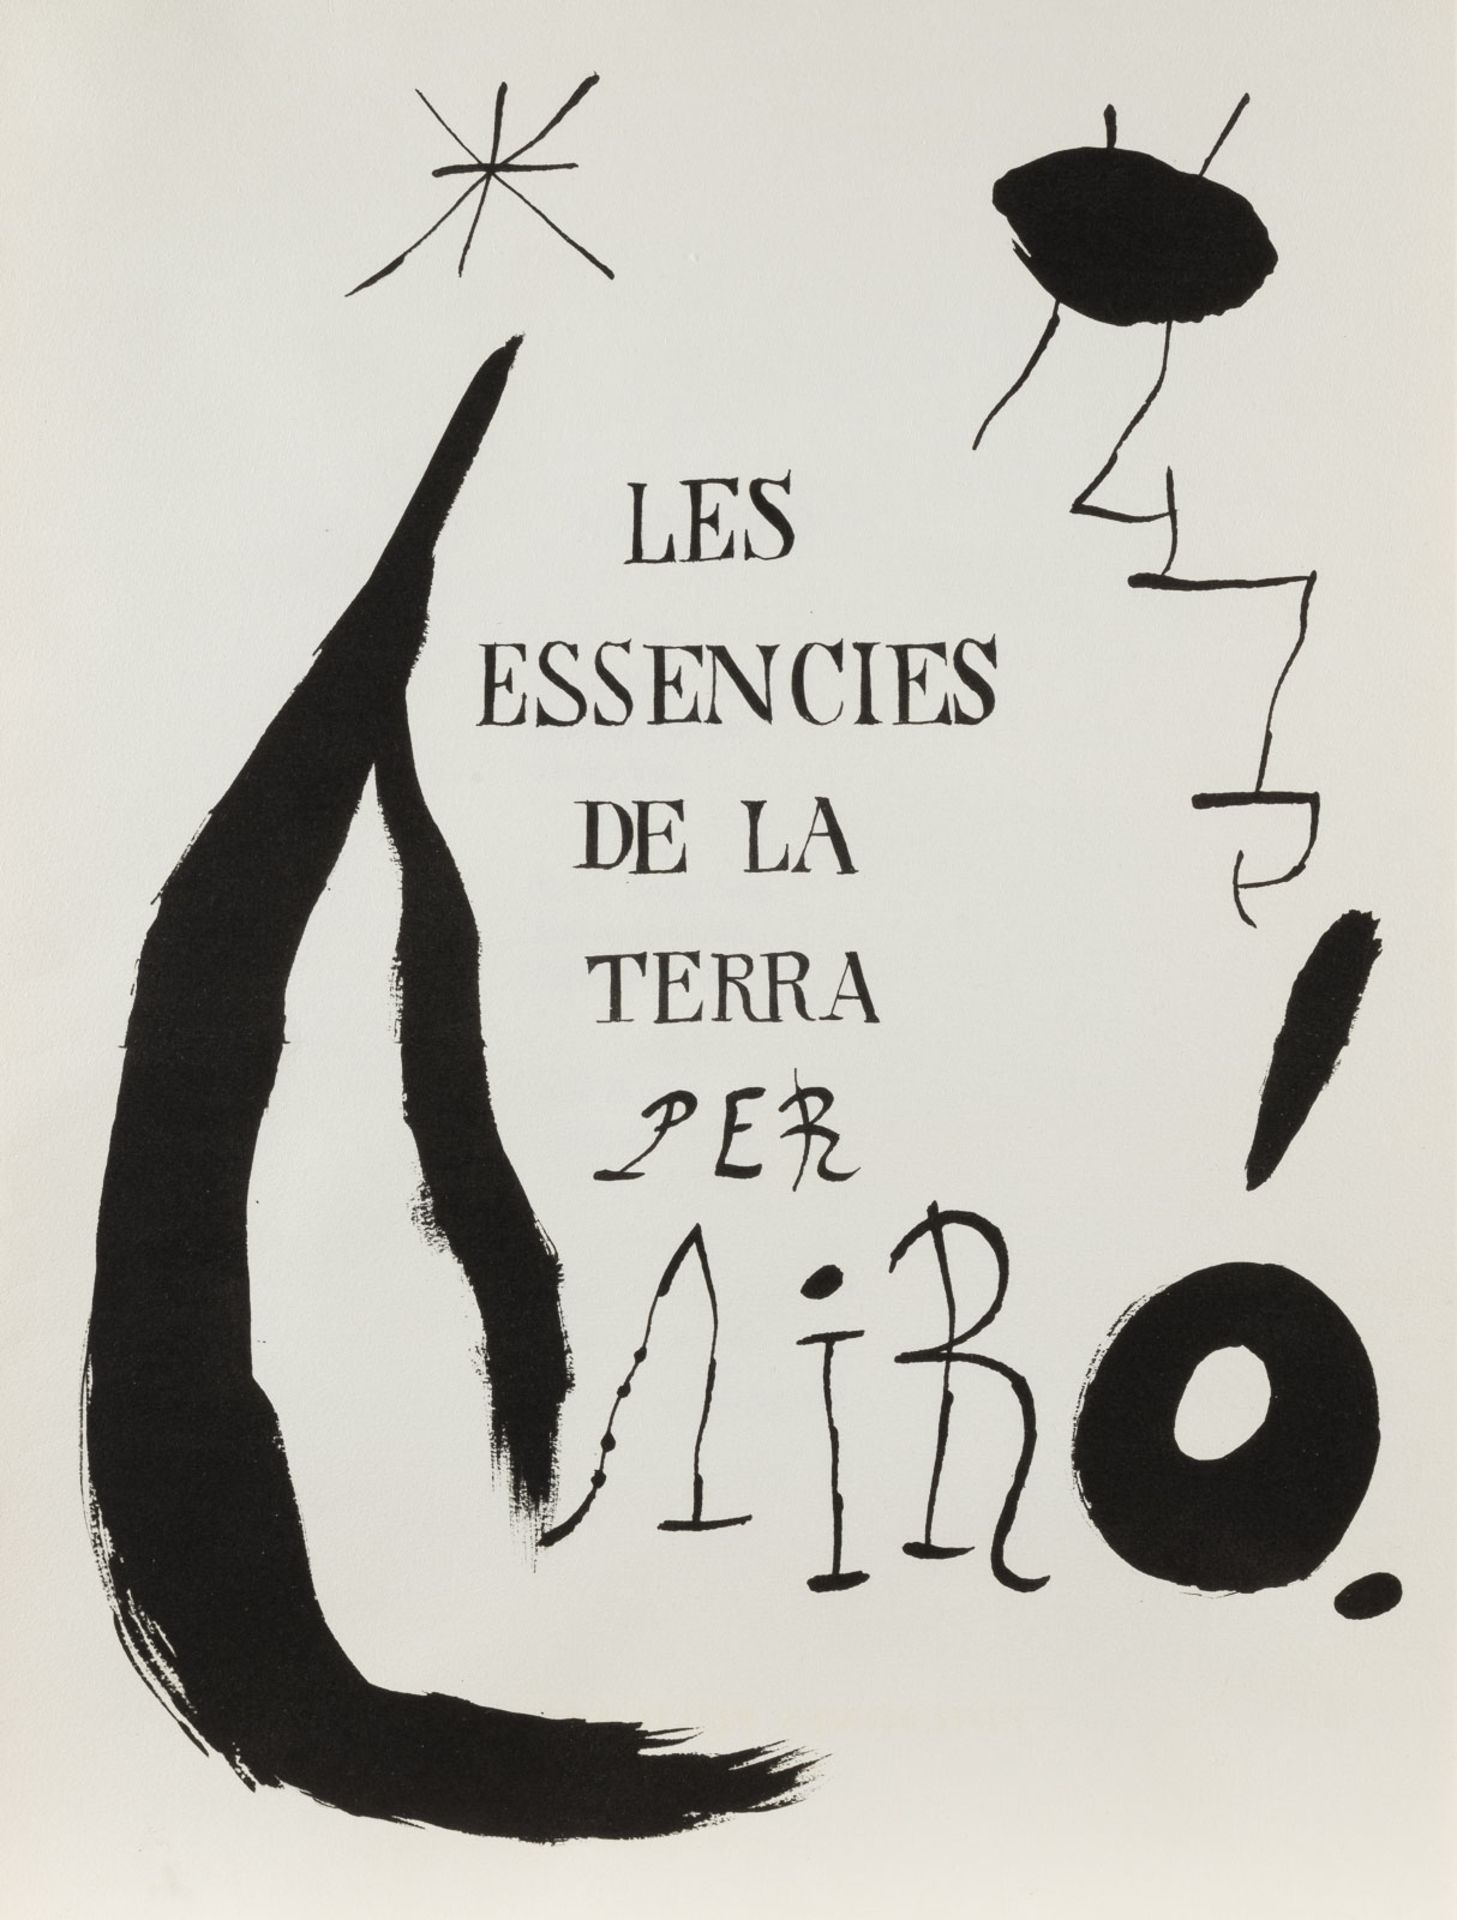 JOAN MIRO 'LES ESSENCES DE LA TERRA PER MIRÓ' (1968) - Bild 3 aus 4